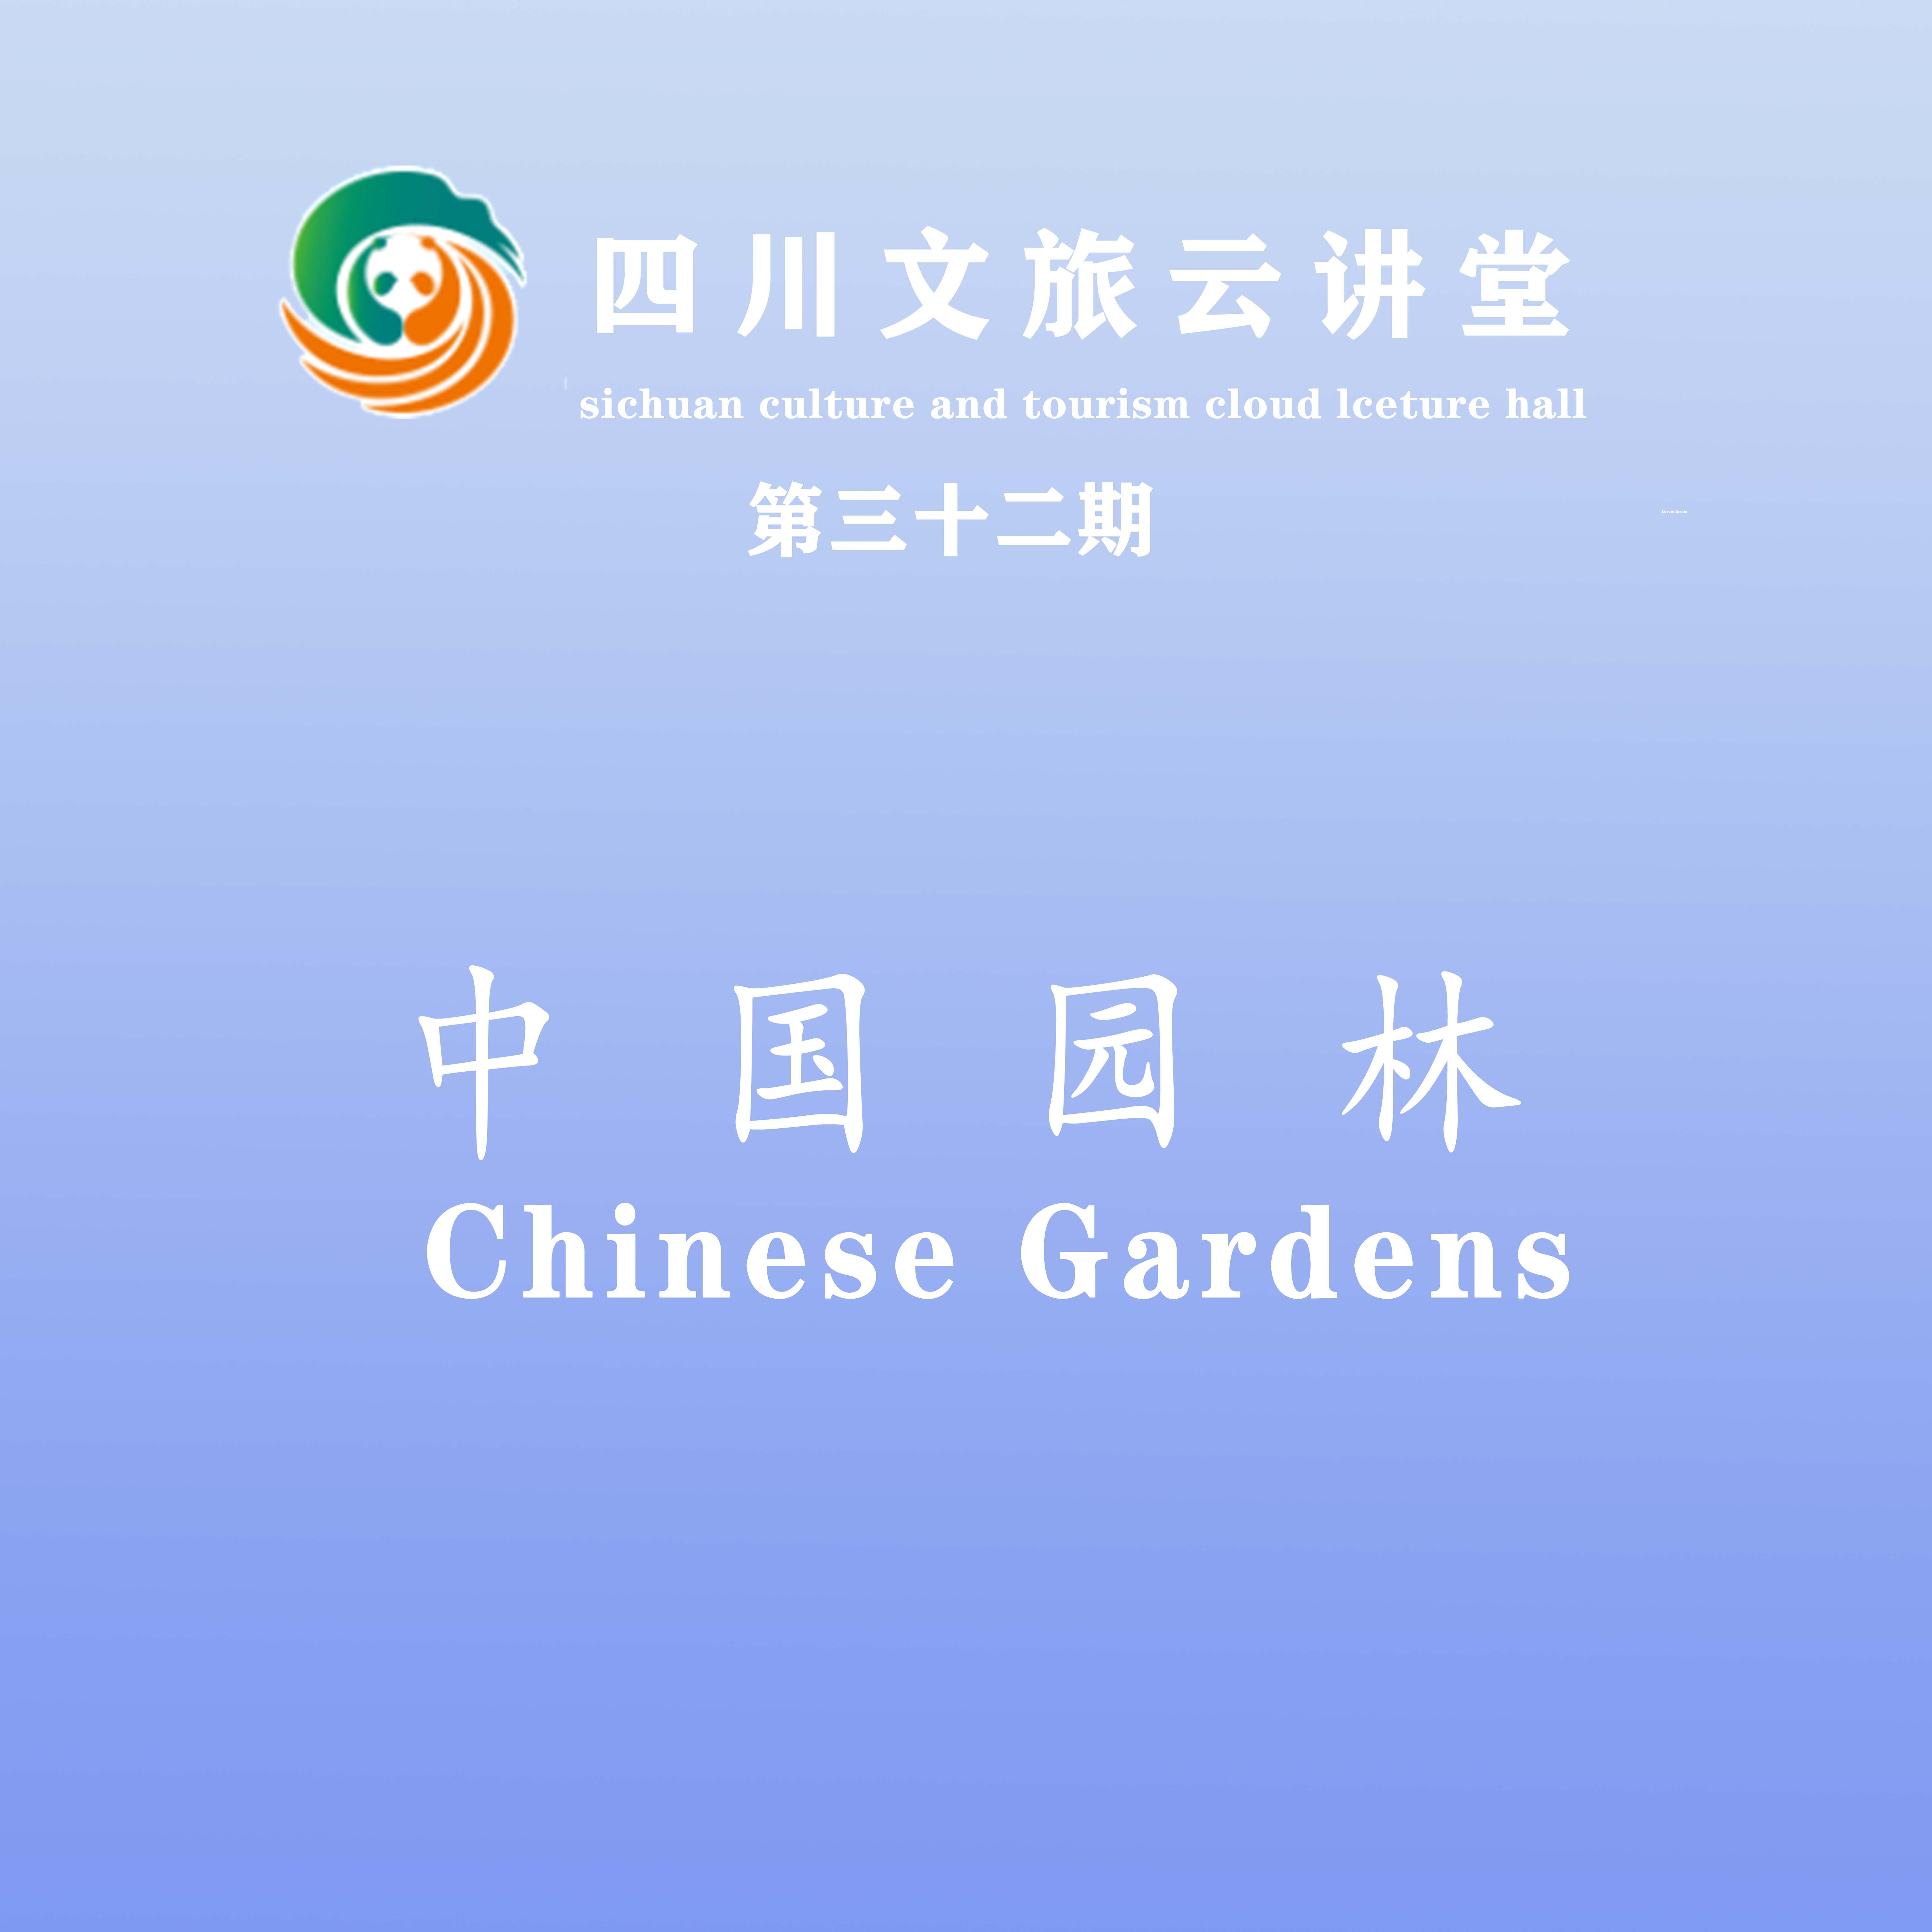 中国园林 Chinese Gardens